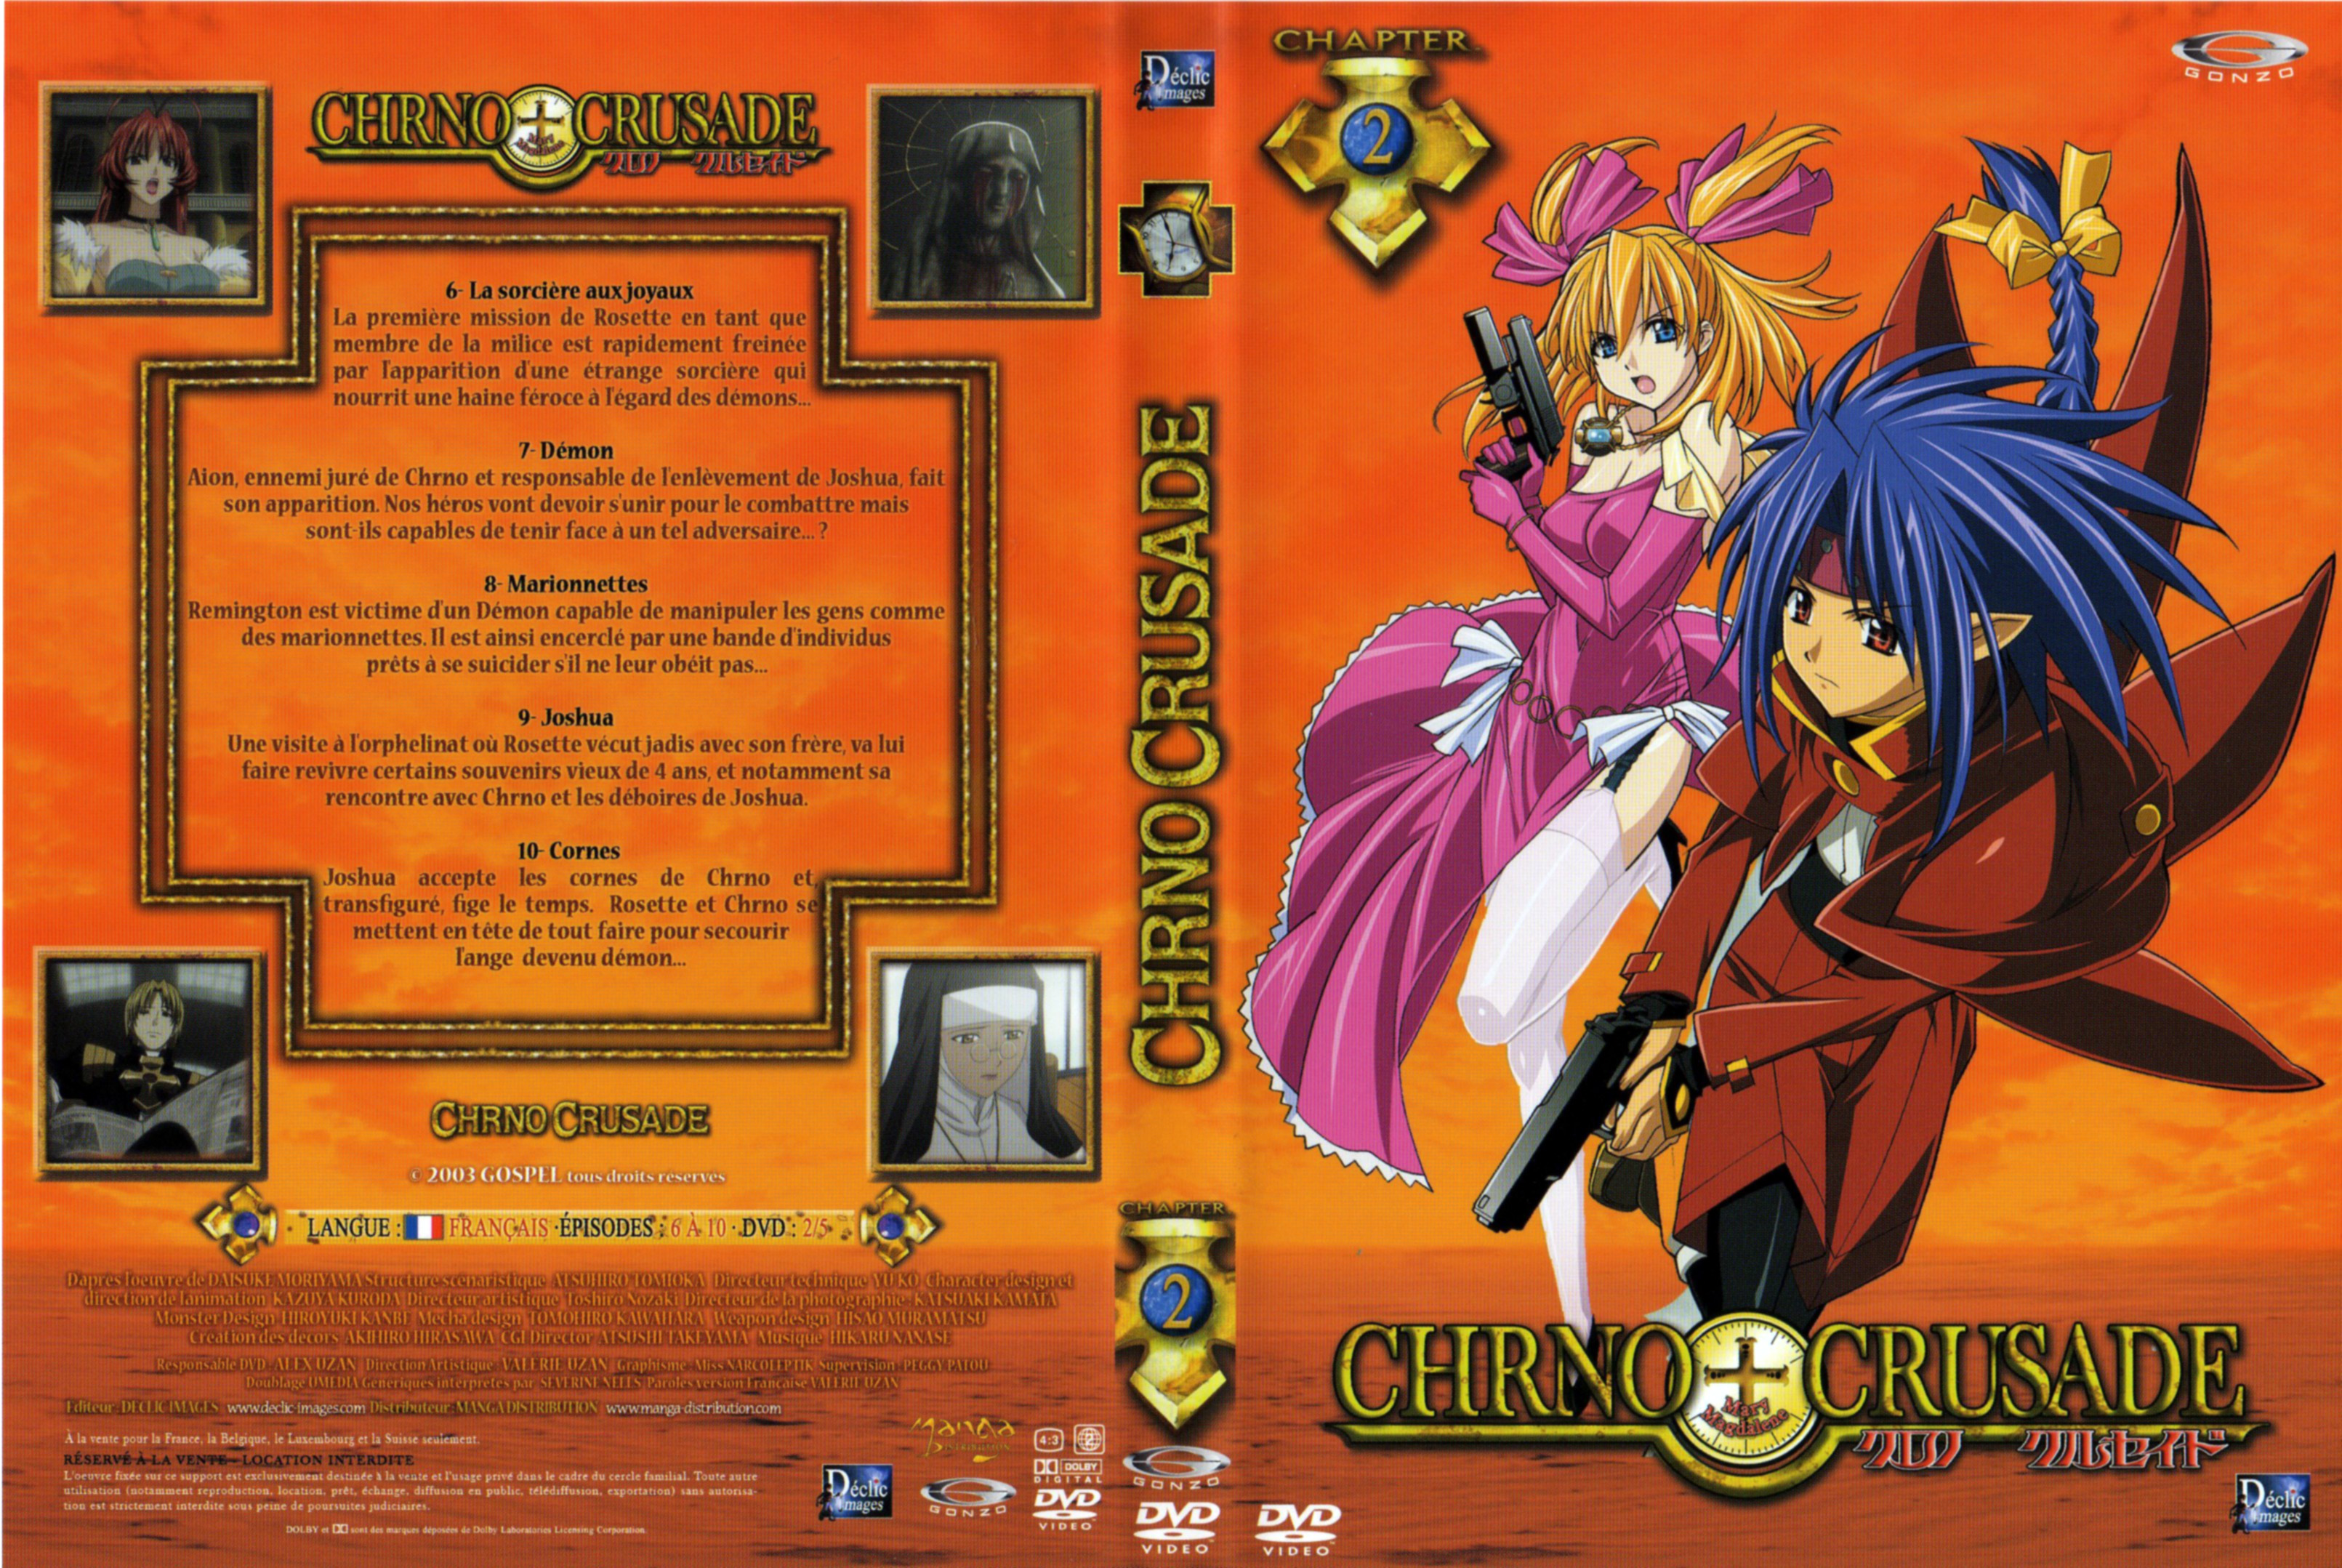 Jaquette DVD Chrno Crusade vol 2 v2